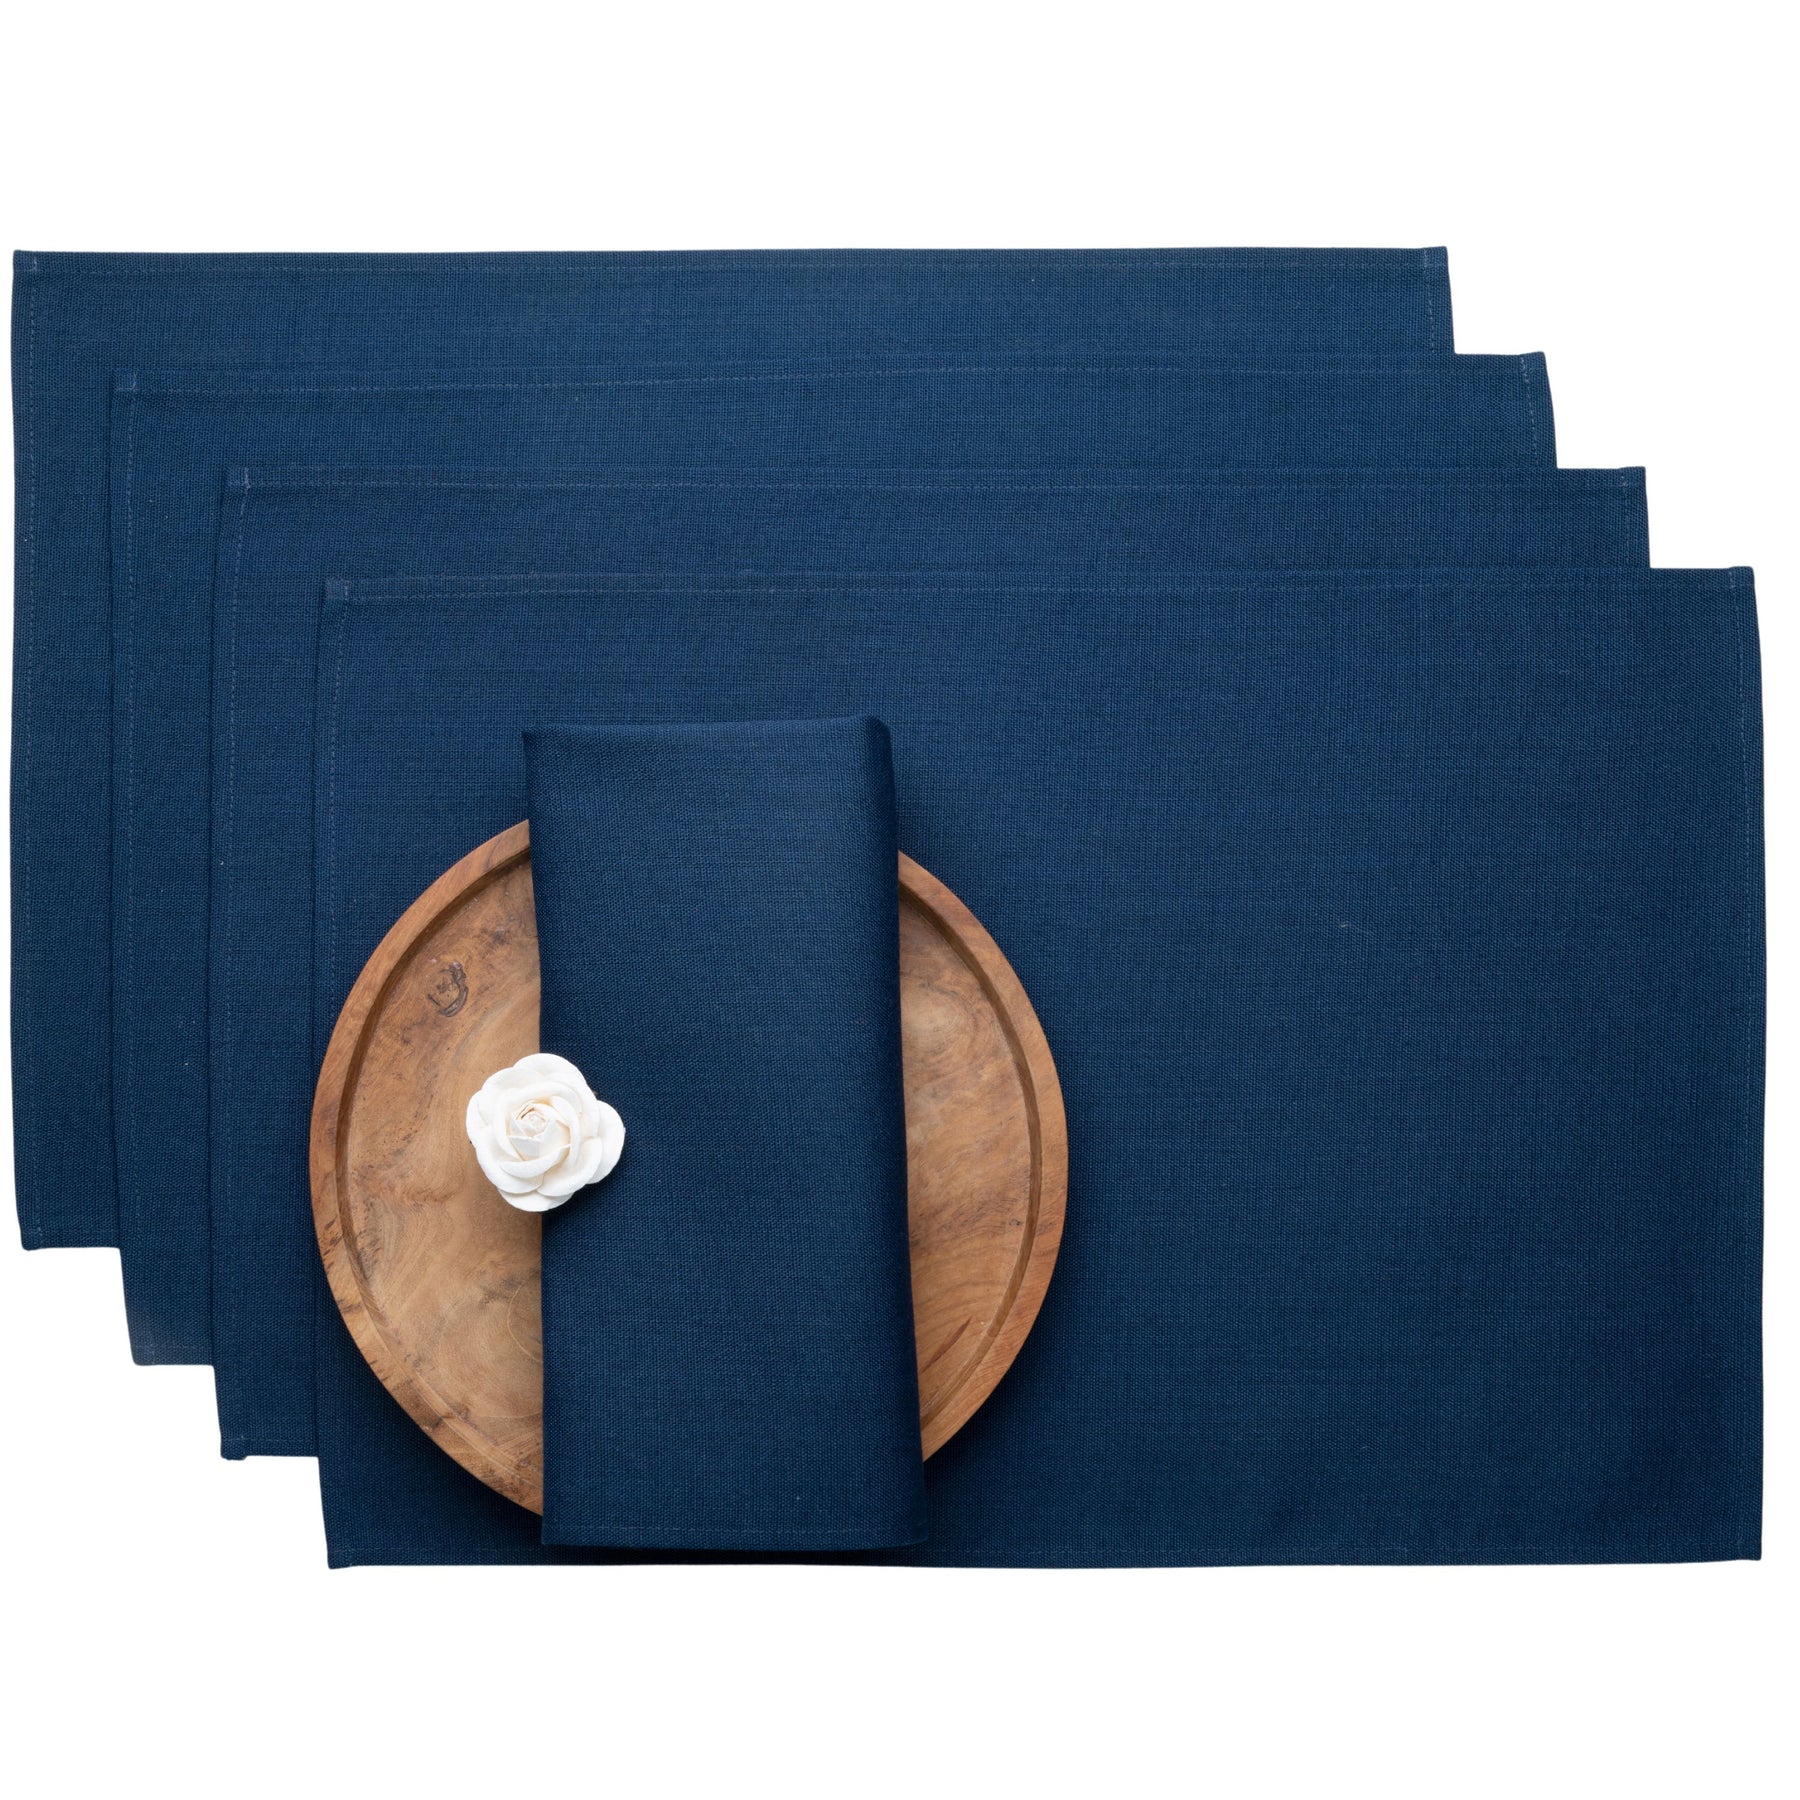 Navy Blue Faux Linen Placemats 13 x 18 Inch Set of 4 - Plain